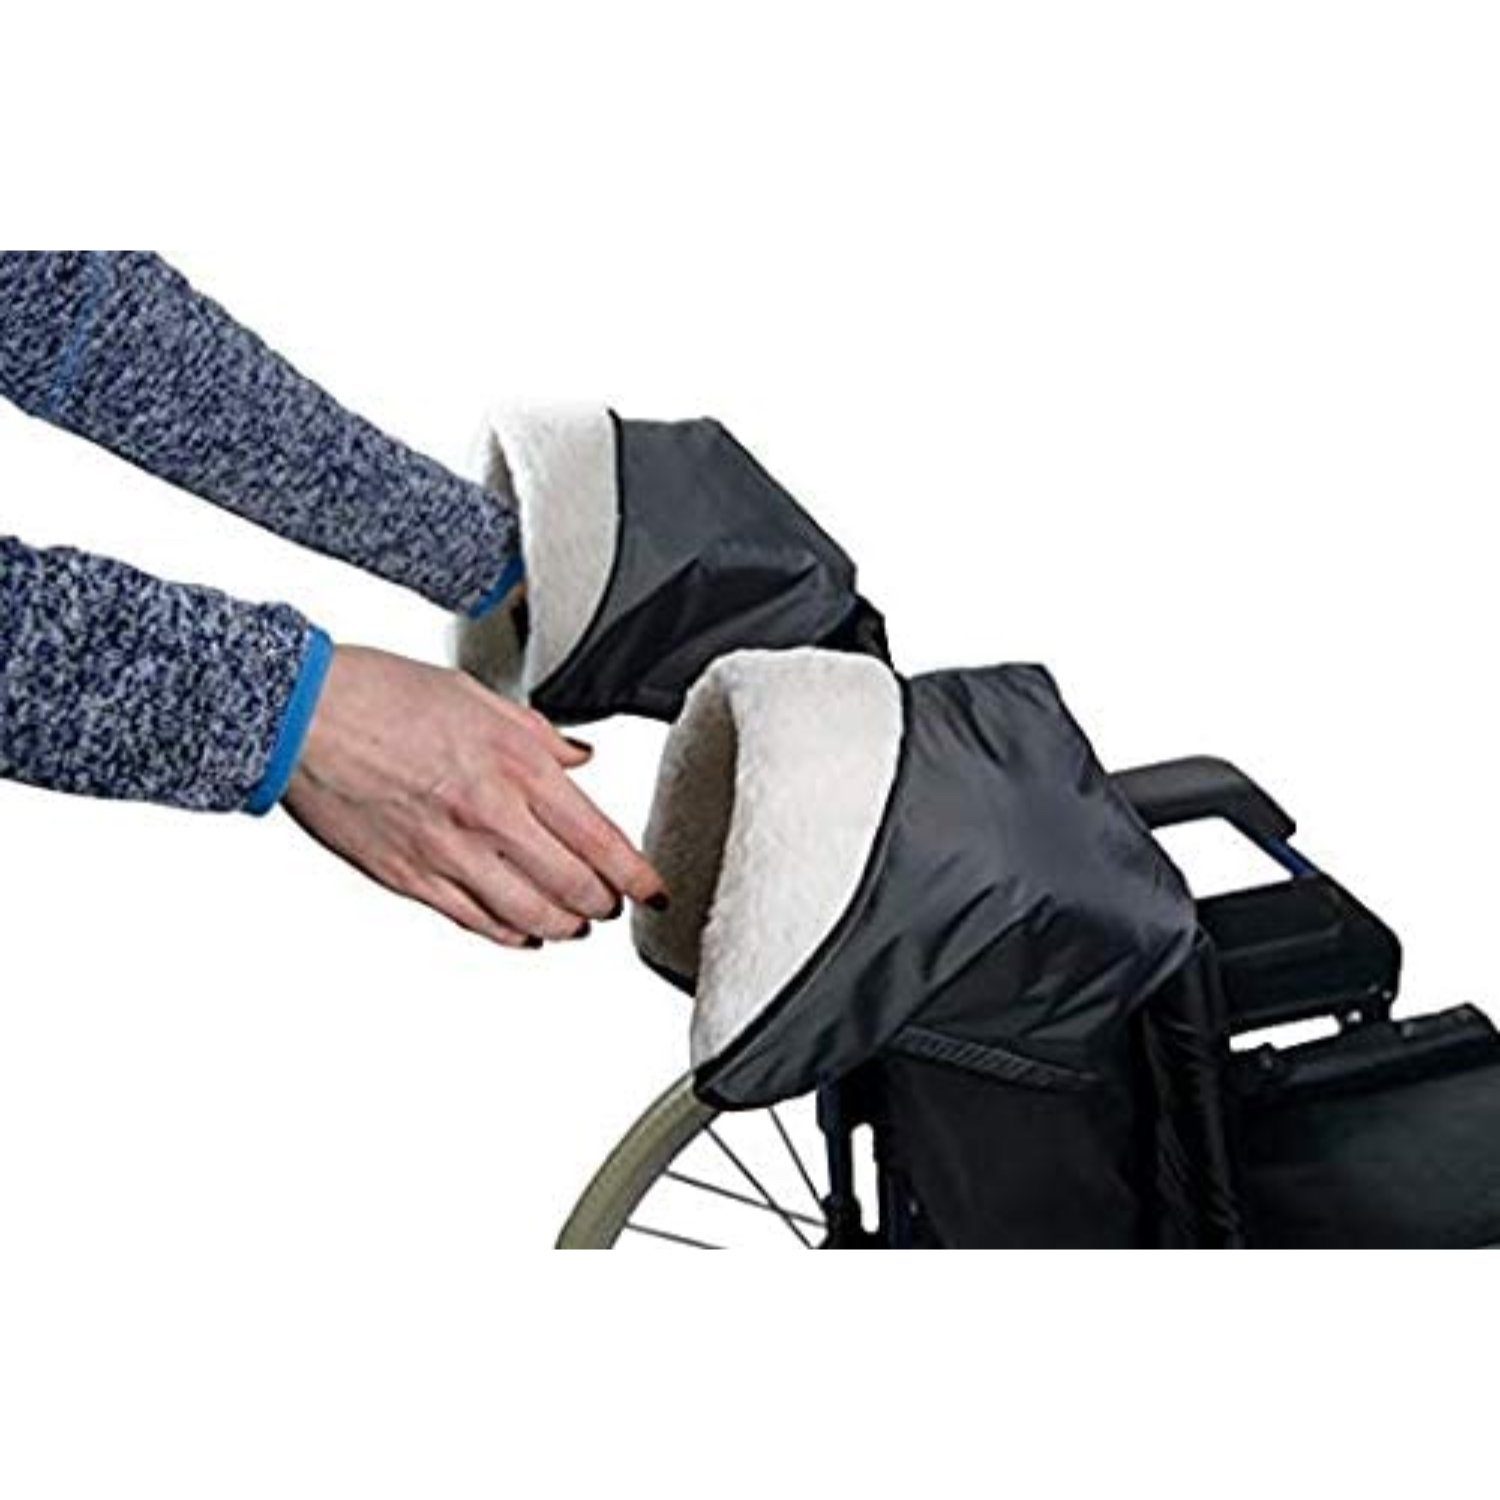 Handschuhe Handmuff Sundo Rollatorhandschuhe Rollstuhlhandschuhe Homecare Gehhilfe Fleecehandschuhe